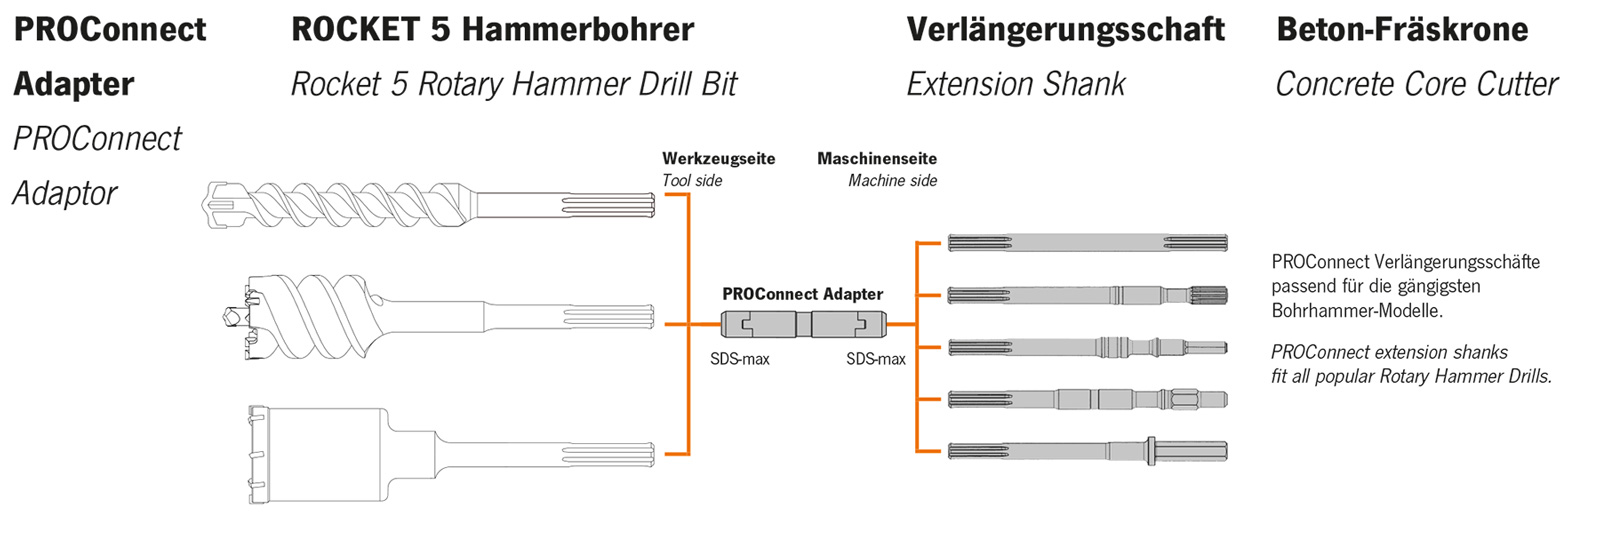 Rallonge PROConnect Emmanchement SDS-max L 320 mm 